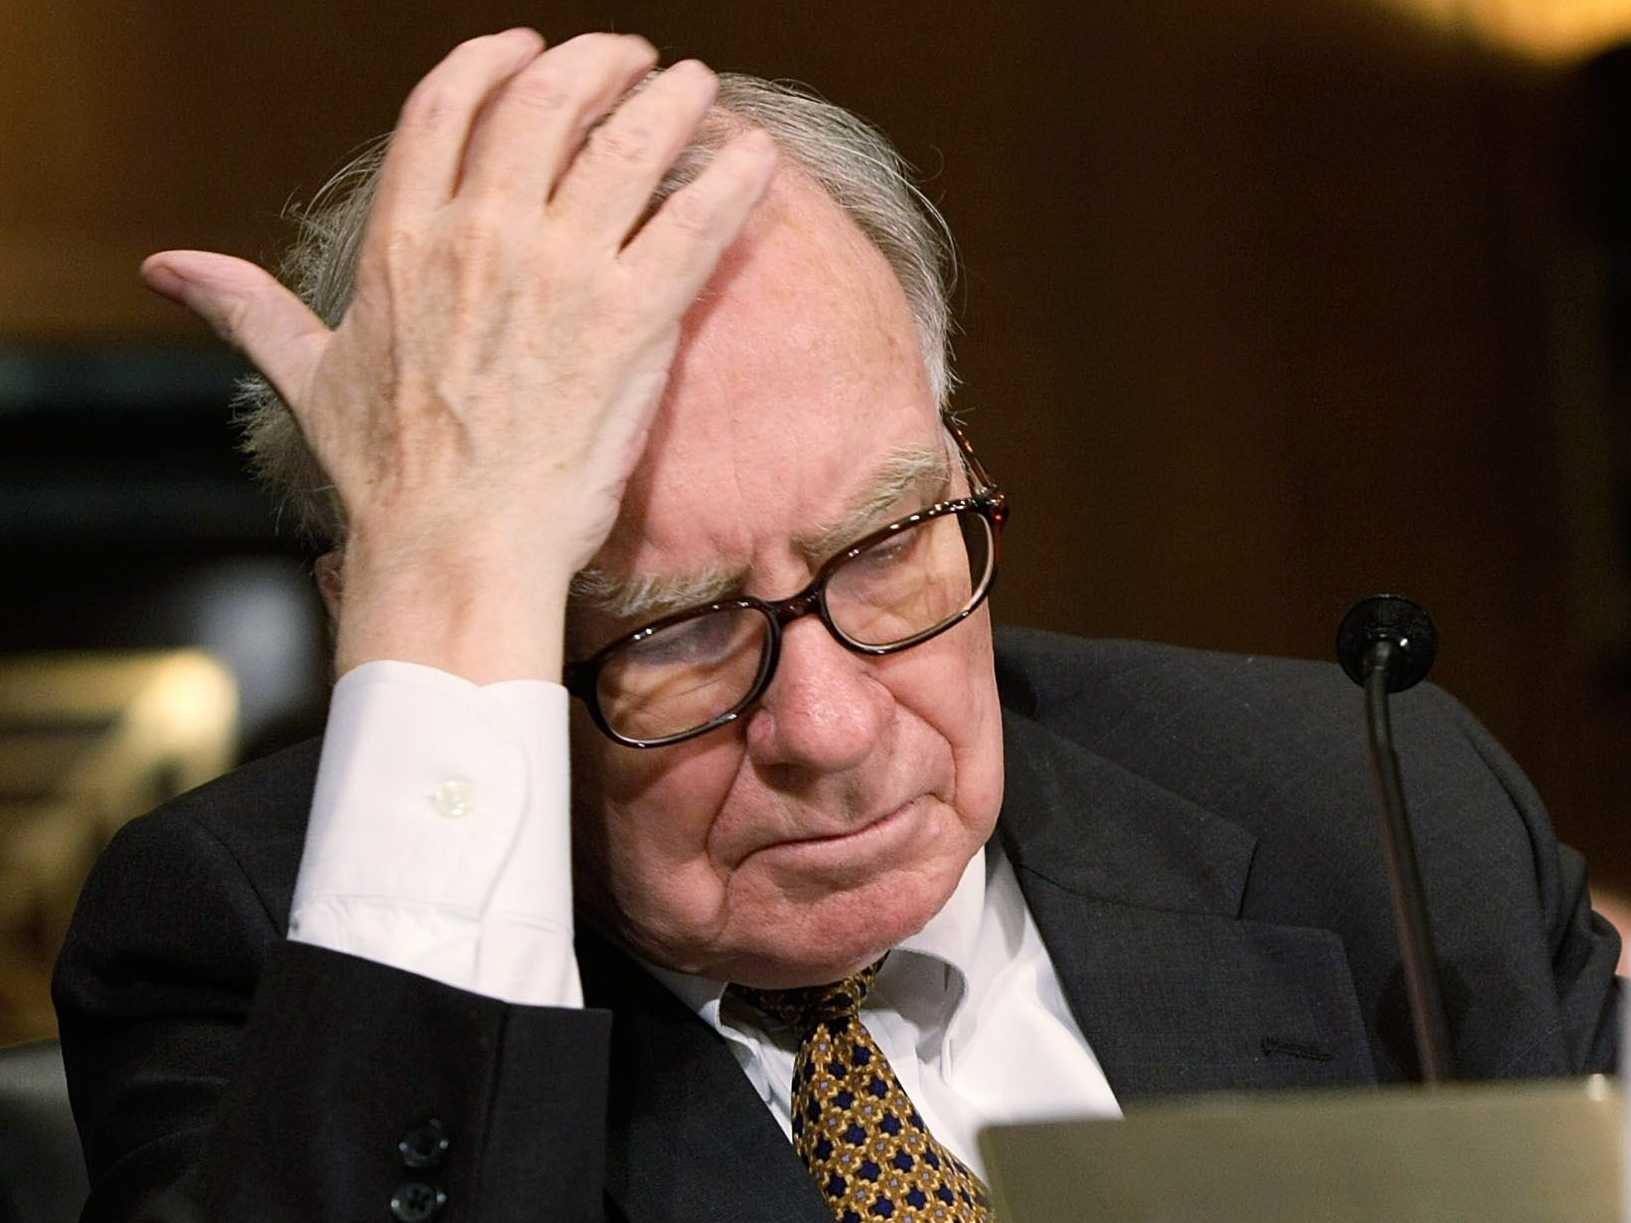 Tỉ phú Warren Buffet xếp thứ 4 trong danh sách tỉ phú giàu nhất hành tinh nhưng lại có sự sụt giảm tài sản khủng khiếp nhất. Kể từ ngày 24.2 đến nay, “huyền thoại đầu tư” mất đến 27 tỉ USD. Ảnh: ST